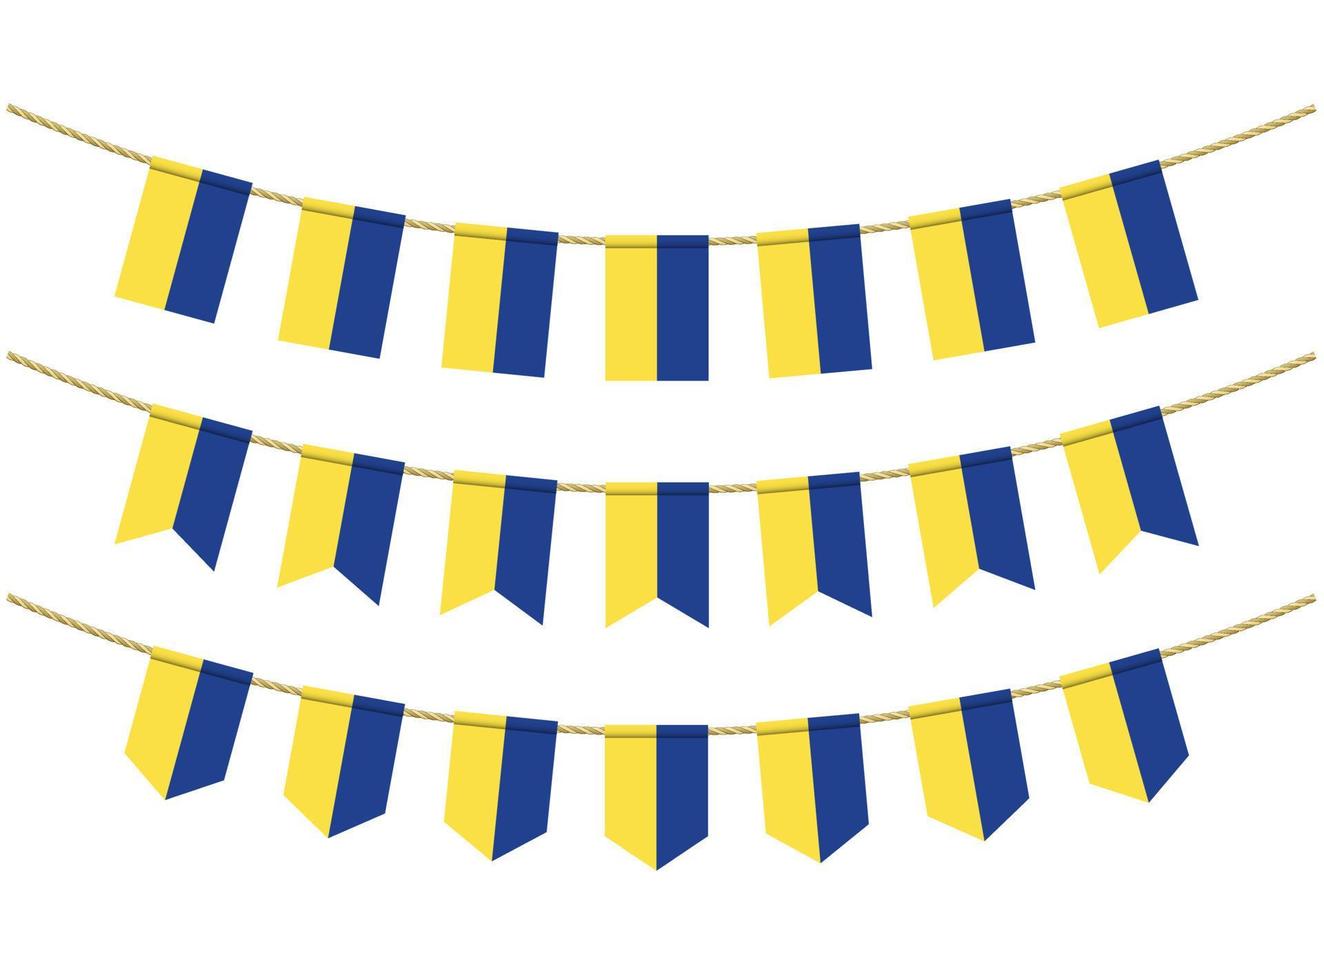 Bandera de Ucrania en las cuerdas sobre fondo blanco. conjunto de banderas patrióticas del empavesado. decoración del empavesado de la bandera de ucrania vector